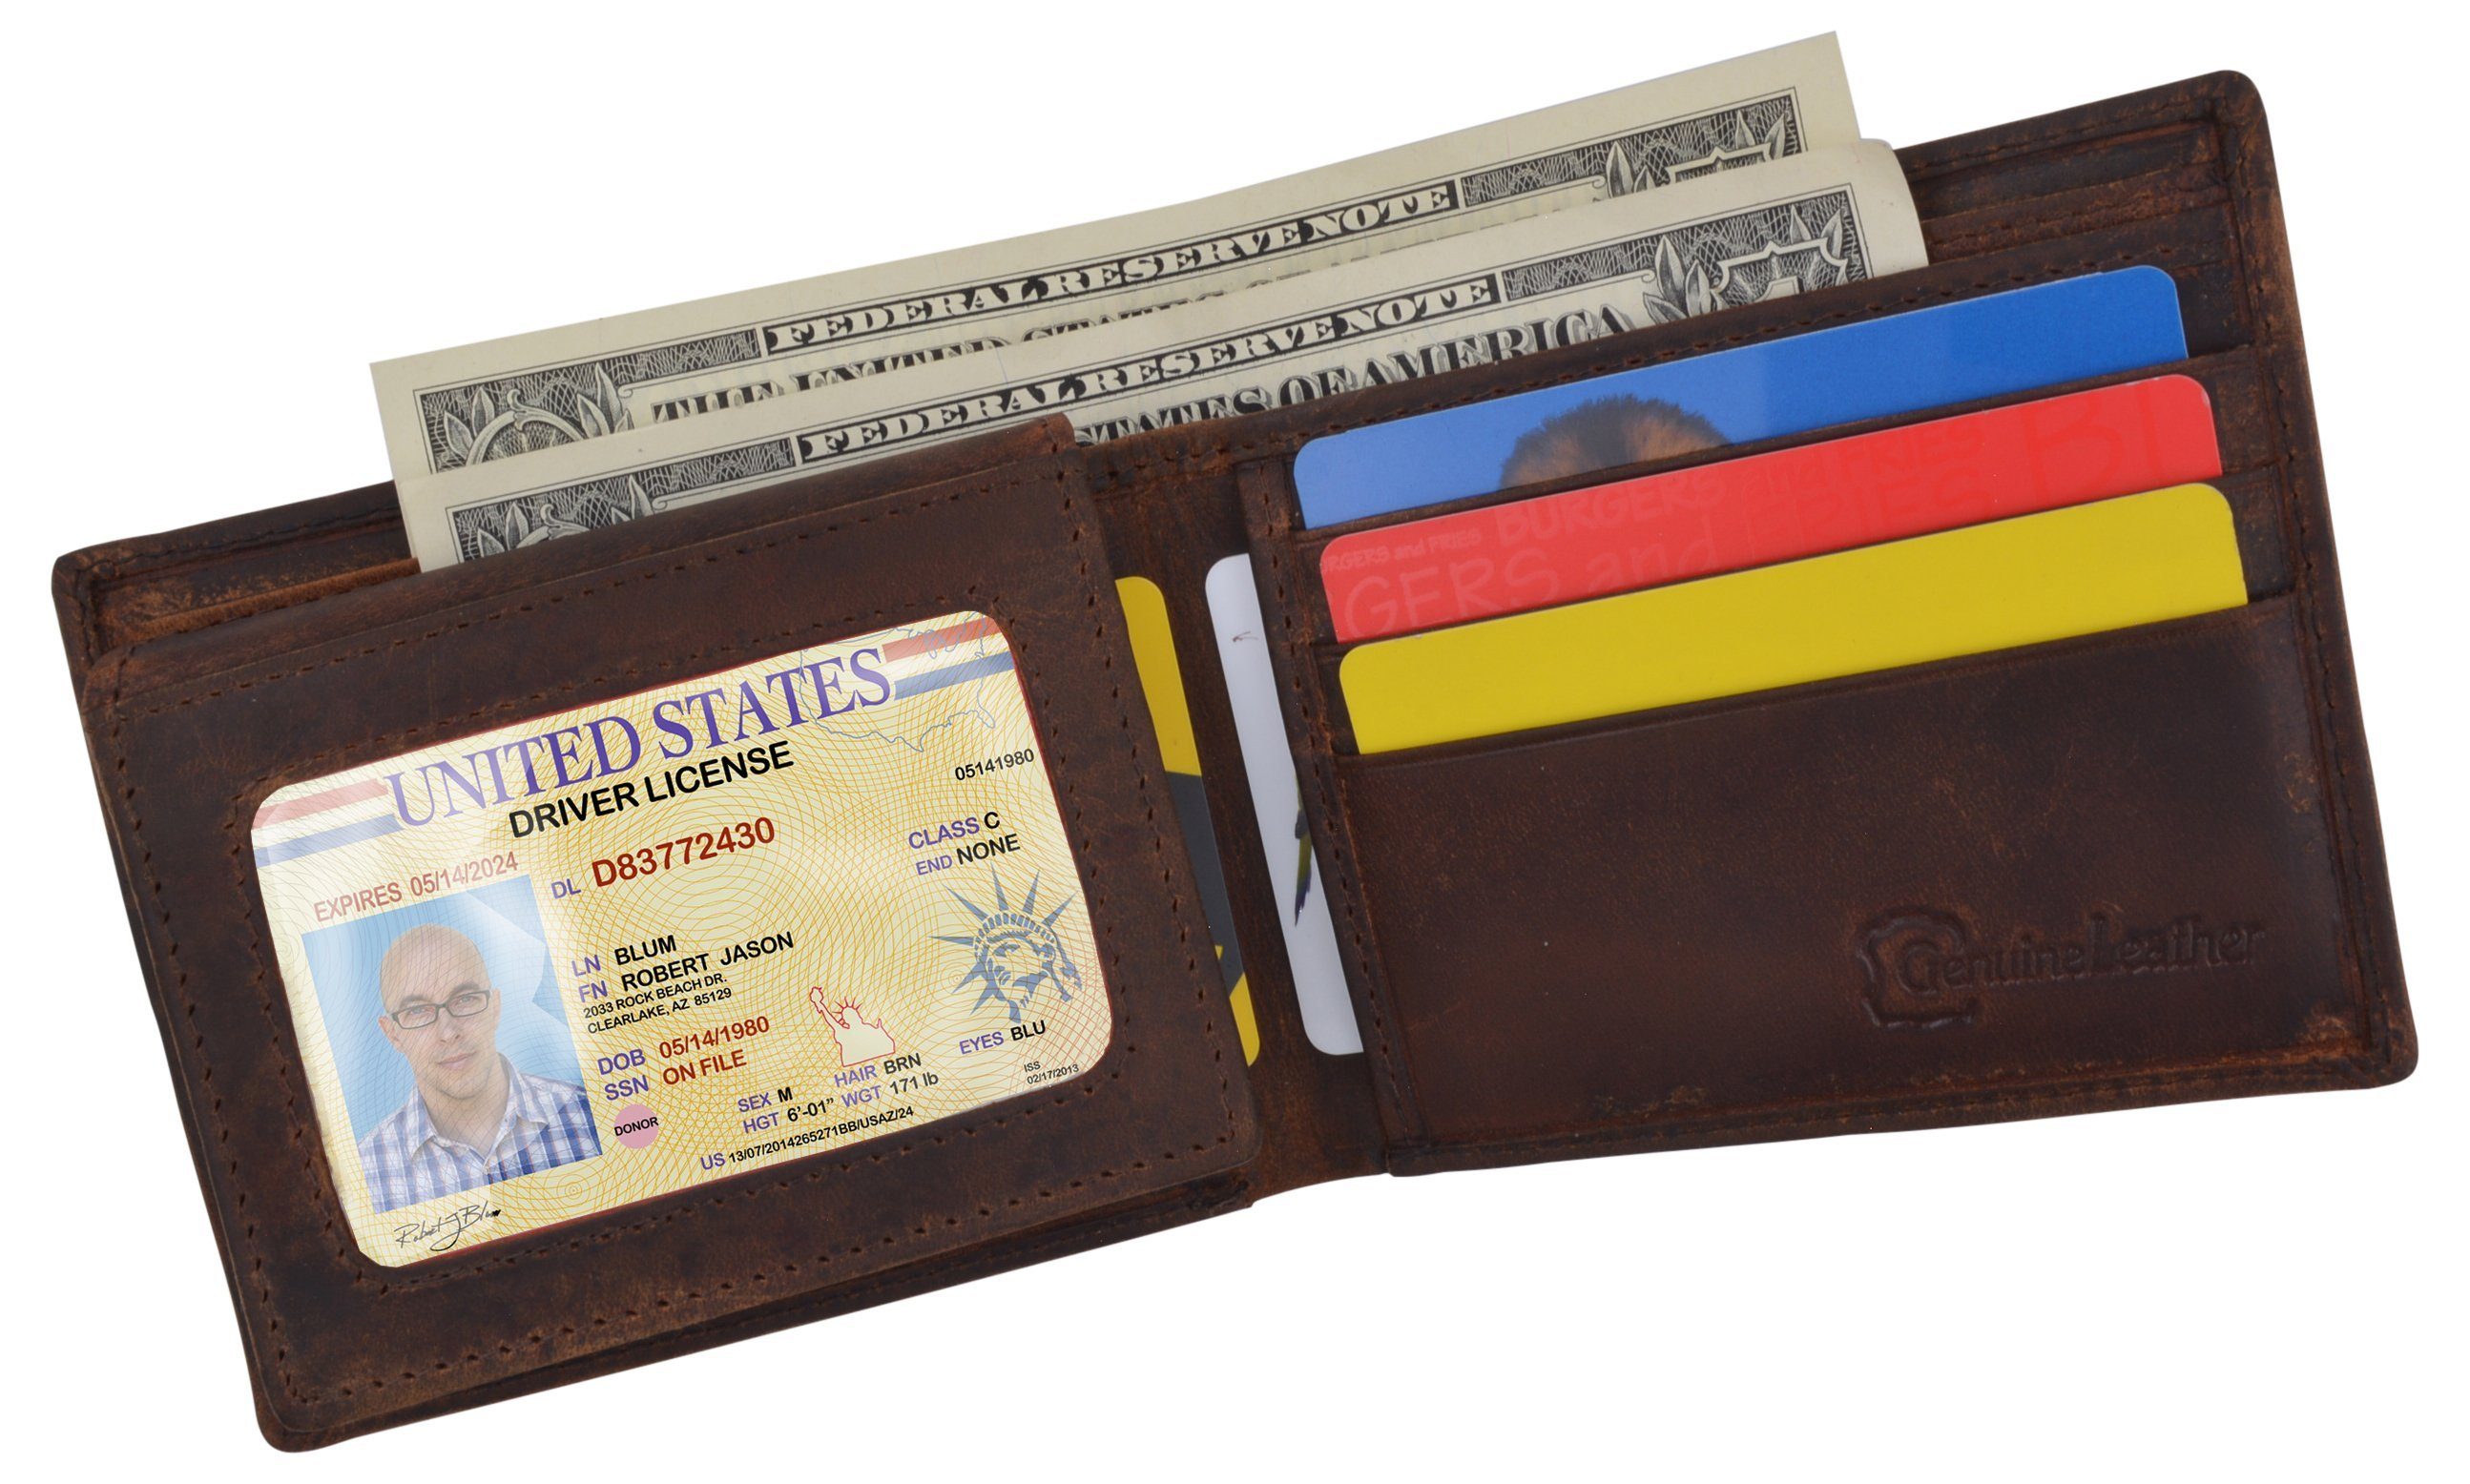  RFID Rustic Men Wallet-Ying Yang Design Craft Stamp